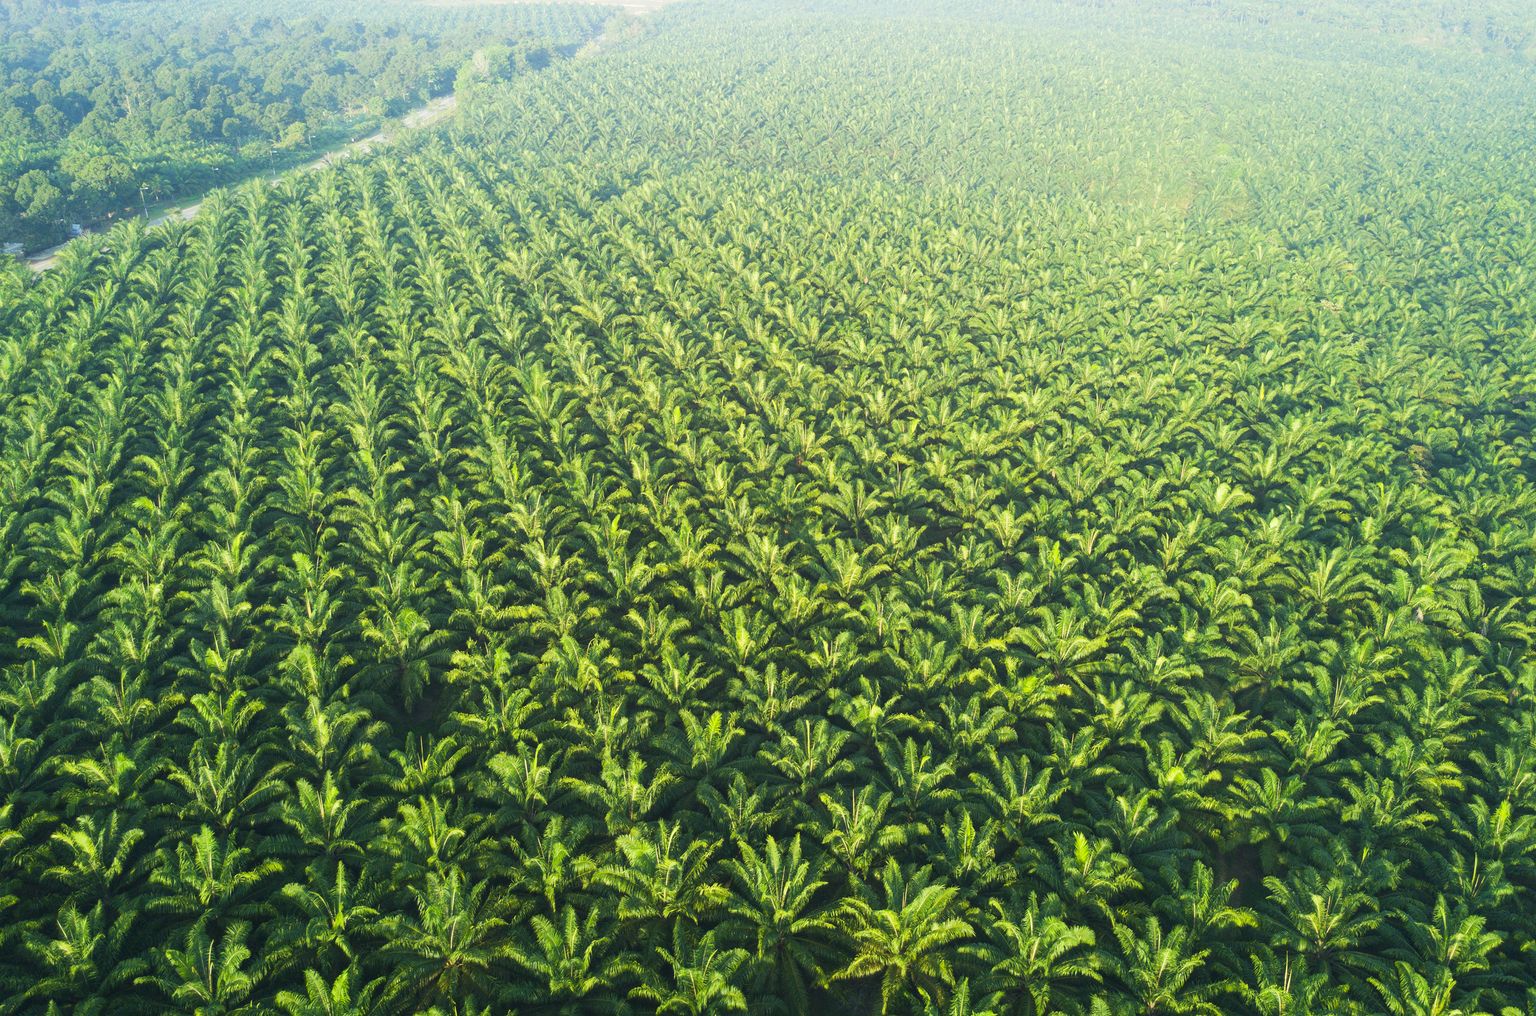 Vista arial da plantação de palmeiras na Ásia Oriental.